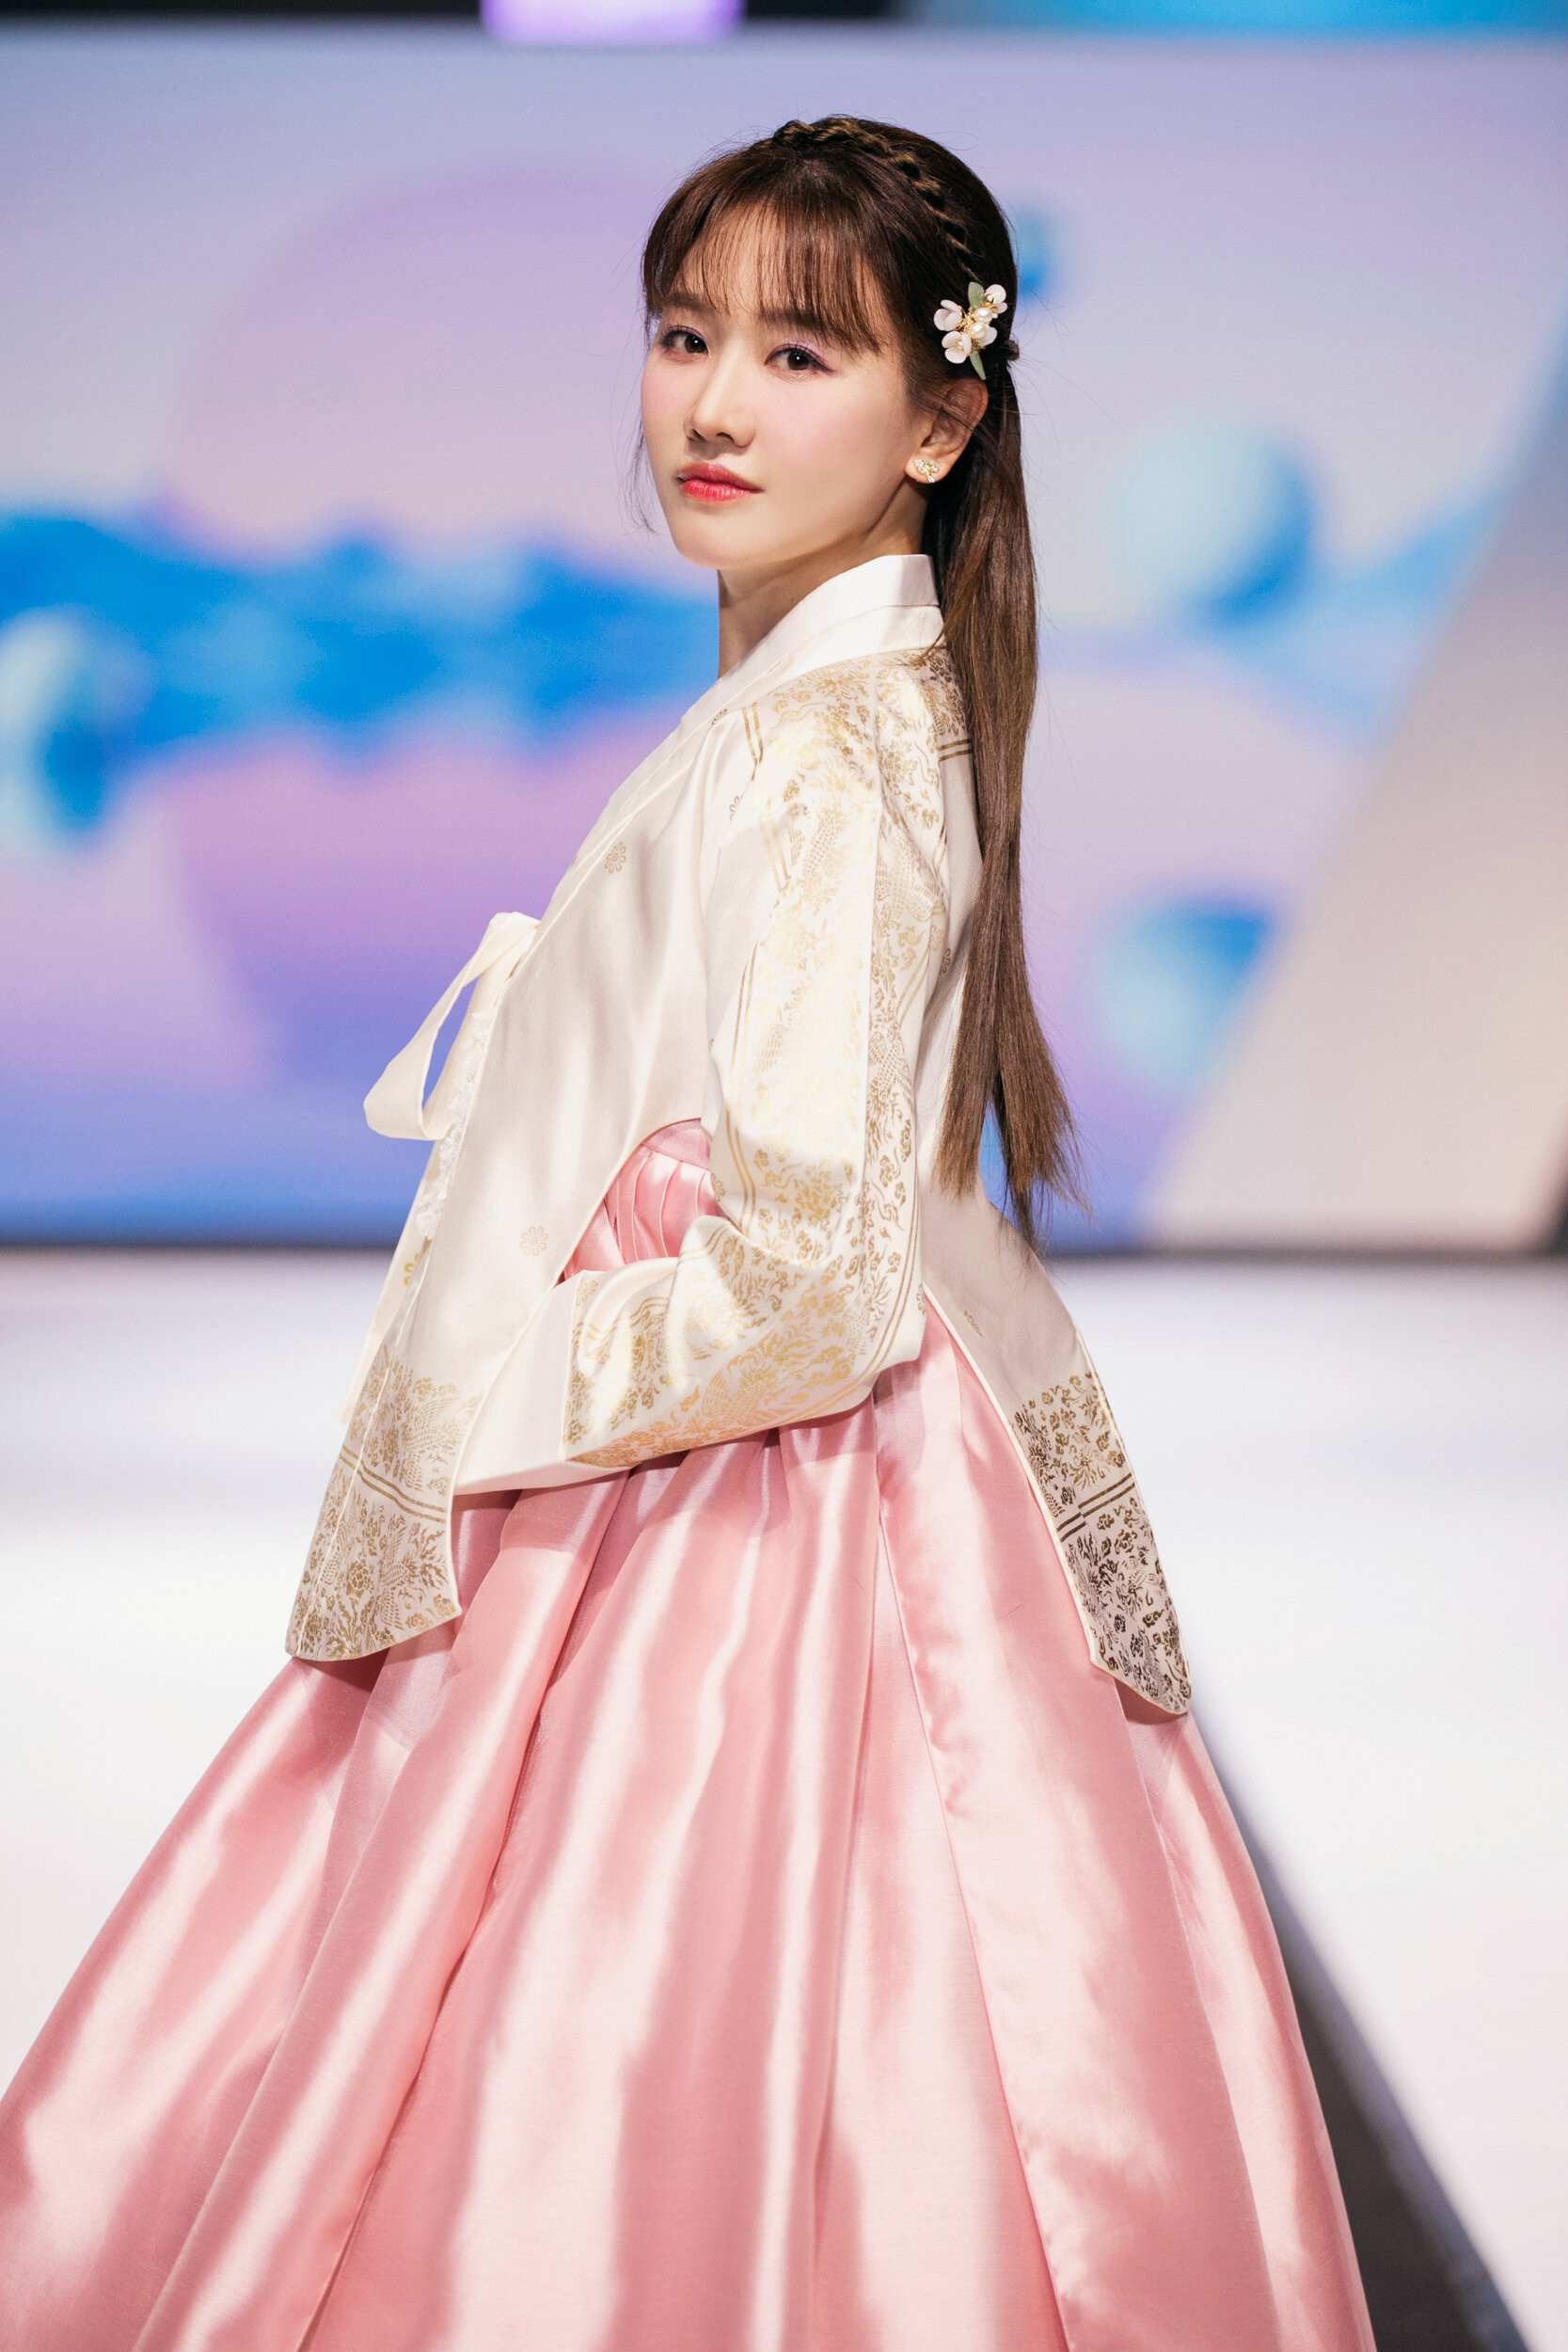 Hari Won xinh đẹp trong bộ hanbok truyền thống Hàn Quốc. Bộ trang phục được thiết kế tinh tế, pha trộn giữa phong cách cổ điển và vẻ hiện đại. Bà xã Trấn Thành từng trình diễn thời trang nhiều lần nên cô không còn bỡ ngỡ khi sải bước trên sàn diễn.